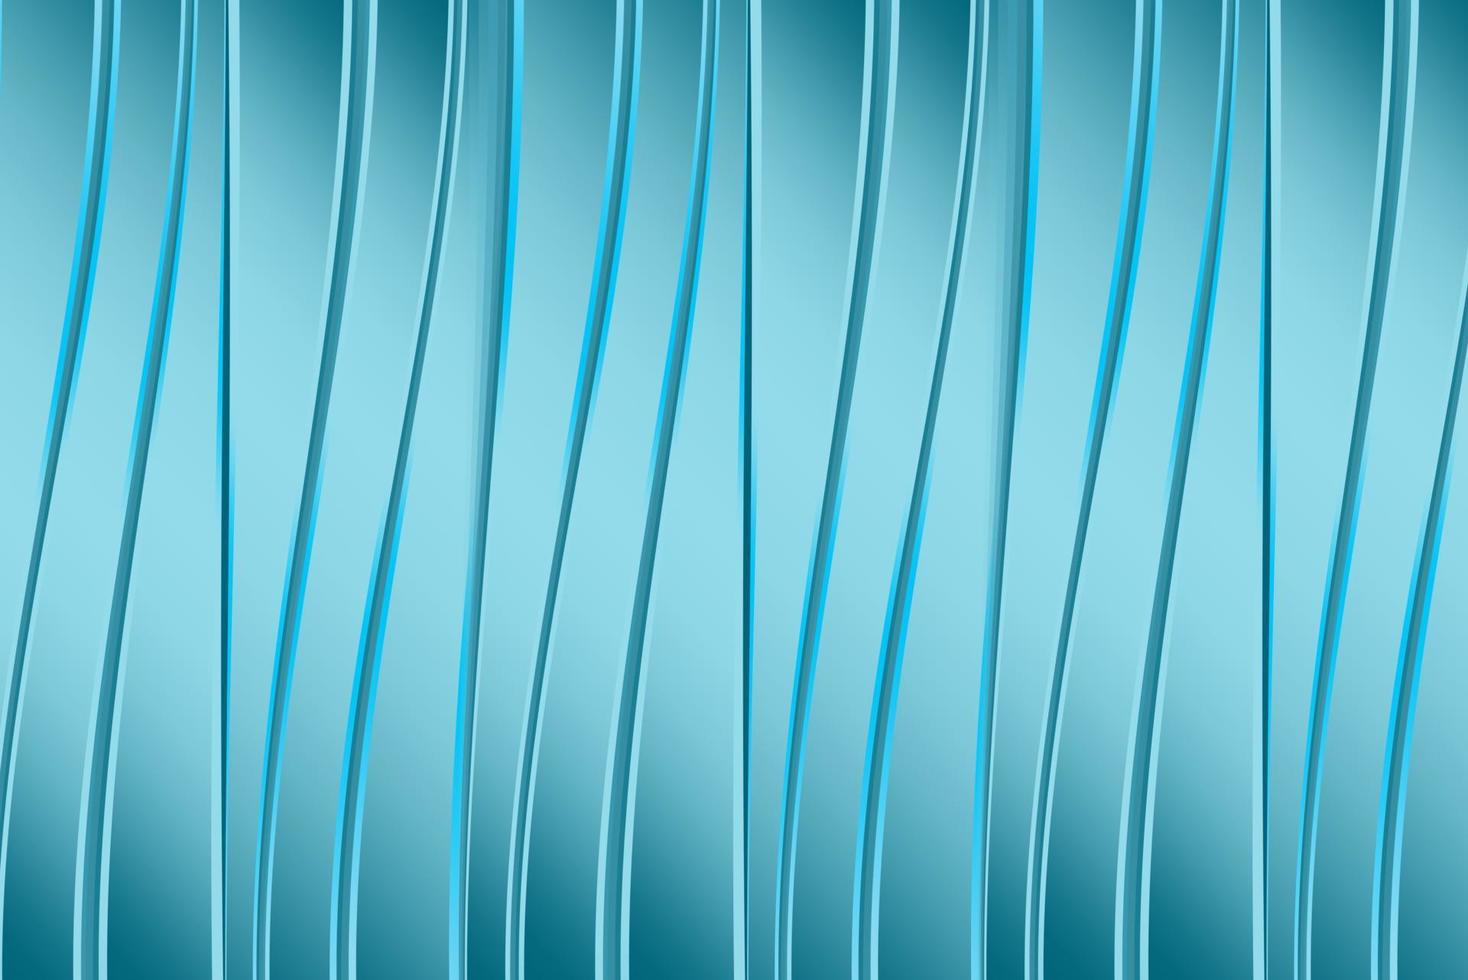 blaugrün oder Türkis Grün abstrakt Muster Hintergrund Textur vektor